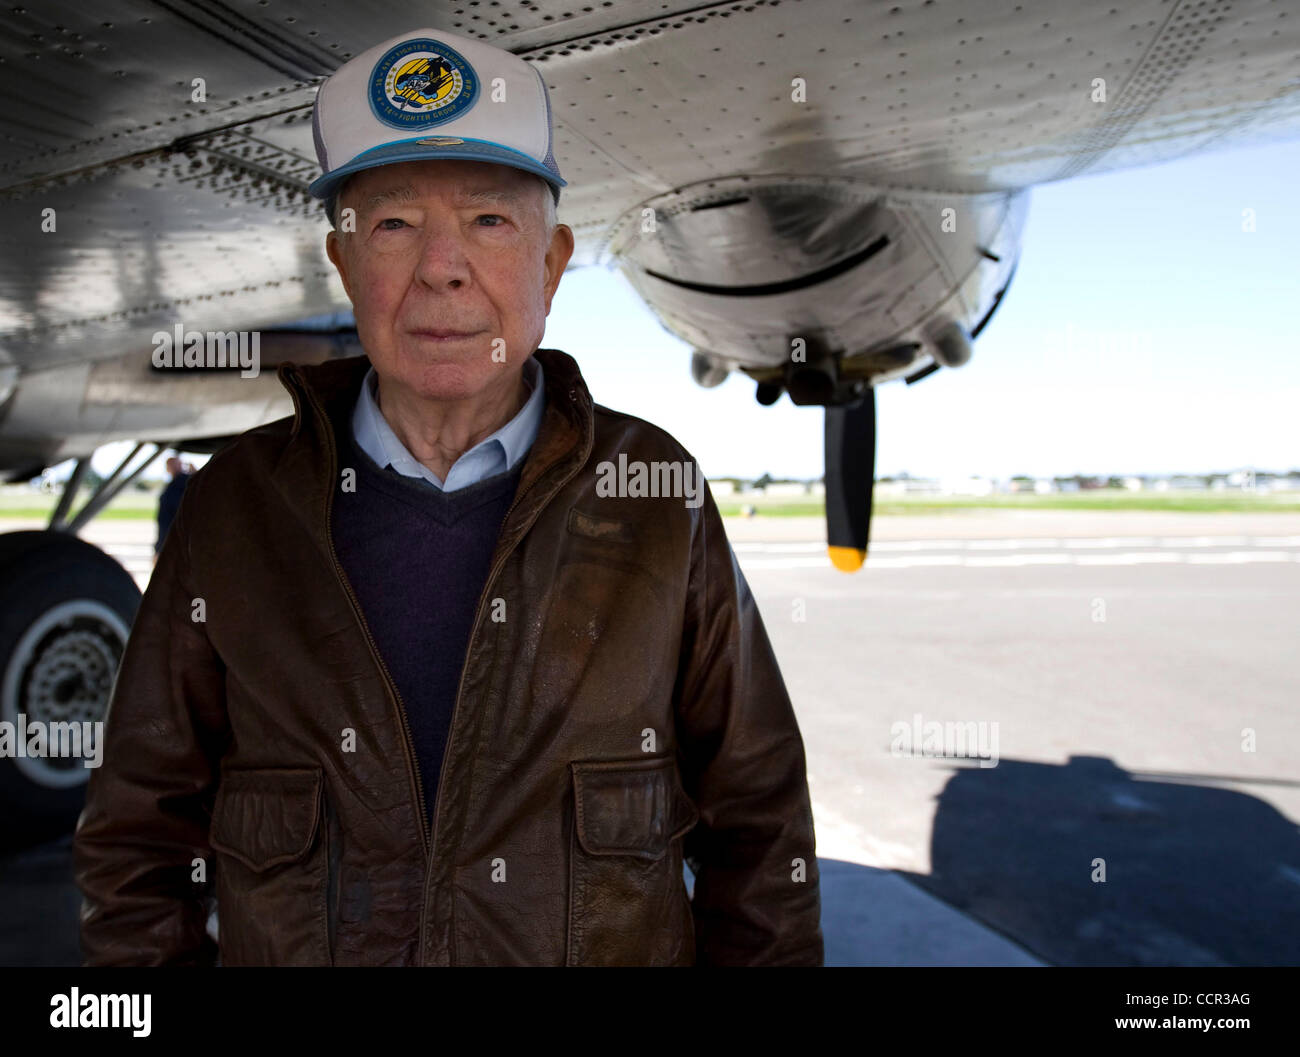 Apr 29, 2010 - Hayward, Californie, É.-U., 86 ans, ancien combattant de la SECONDE GUERRE MONDIALE James Stanhope de Fremont, CA se tient sous l'aile d'un 1945 B-17G Flying Fortress', 'un des avions il s'est rendu à protéger. Le P-38 Lightning une fois pilote escorté les B-17's en Allemagne. (Crédit Image : © William Mancebo/ZUMApress Banque D'Images